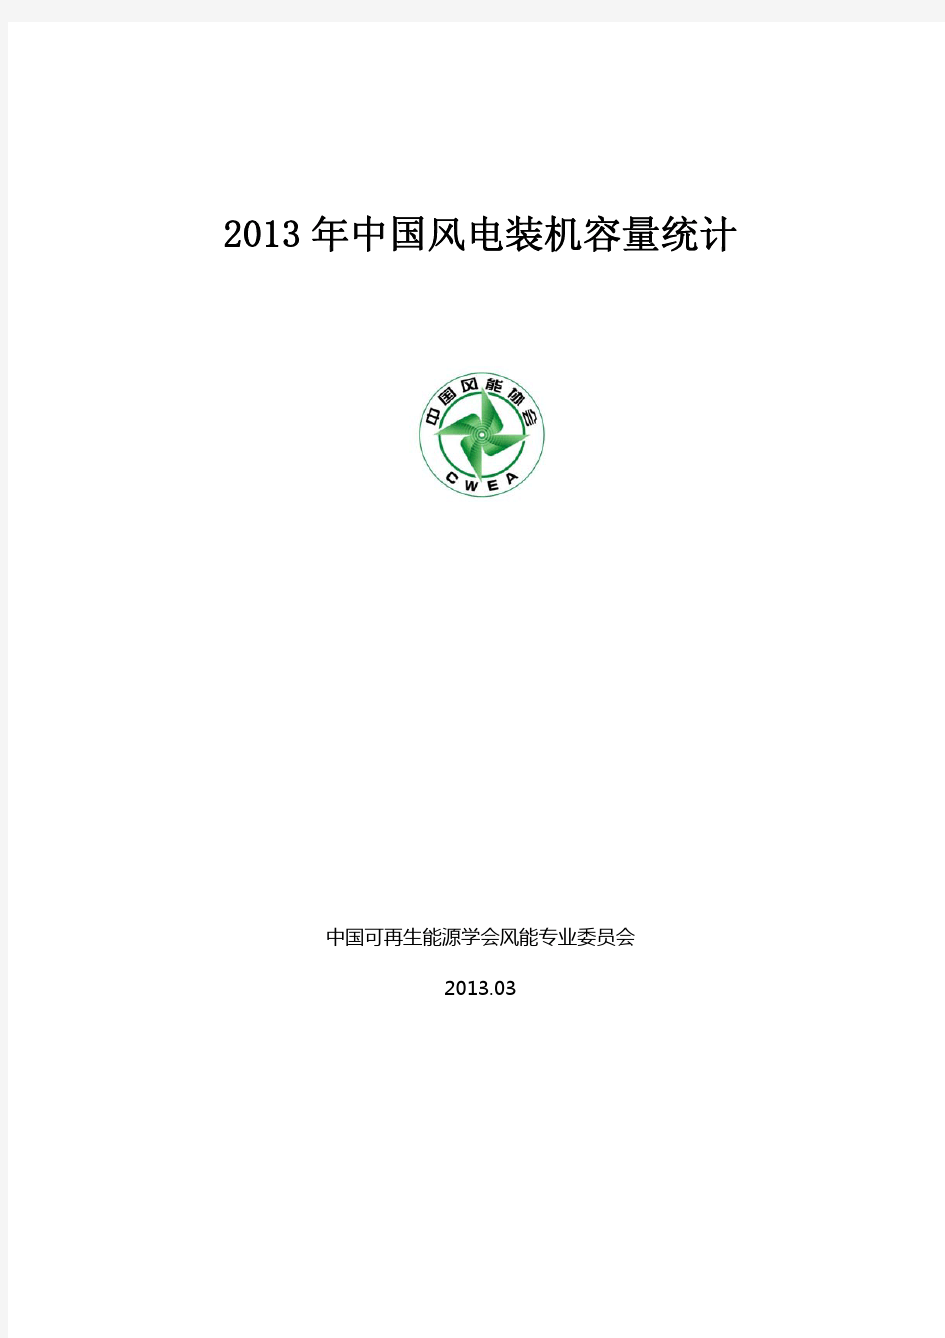 2013年中国风电装机容量统计